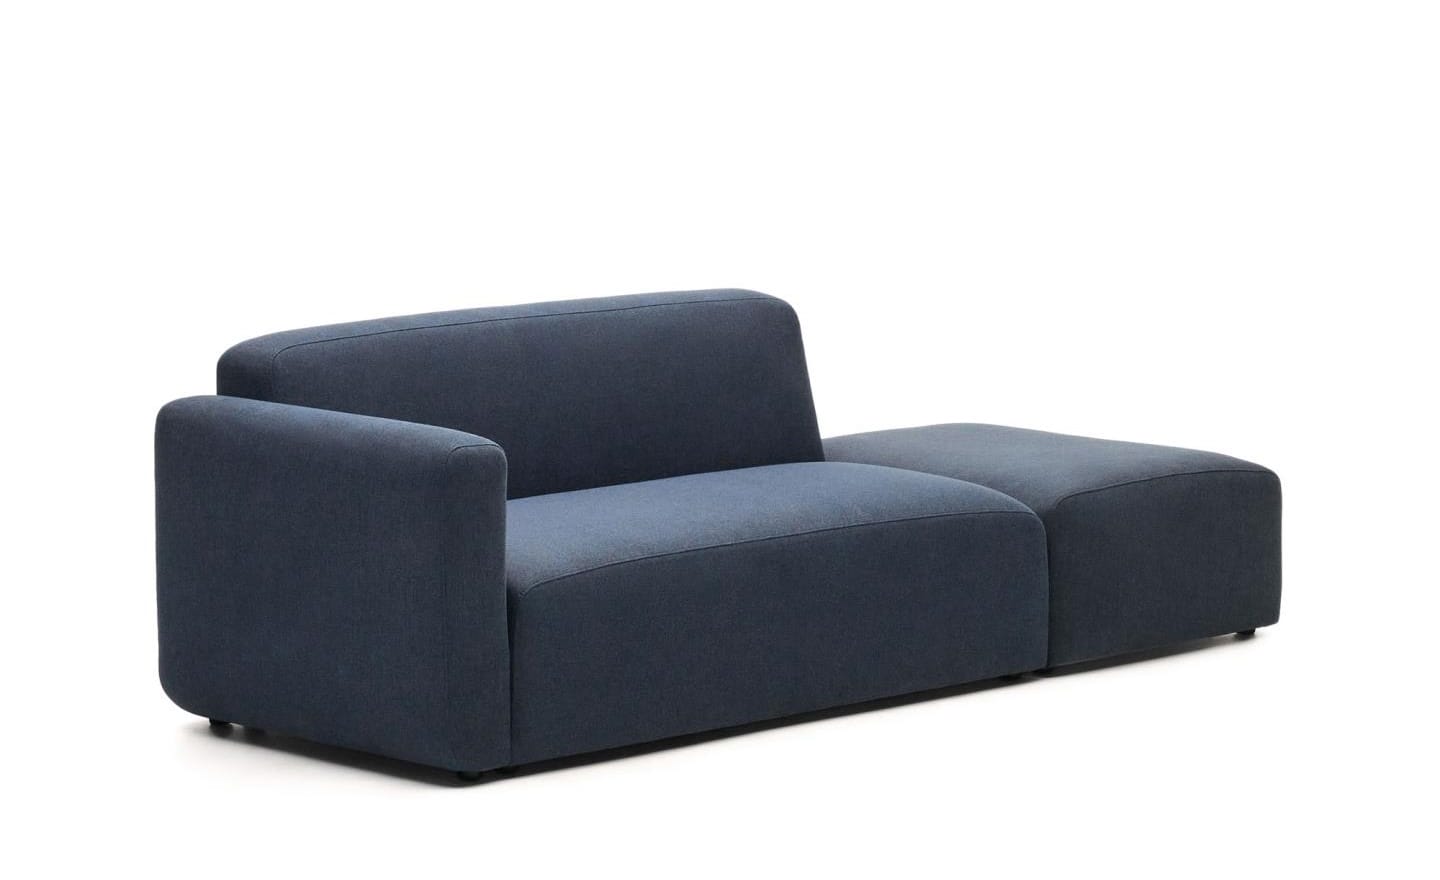 Sofá de 2 Lugares C/ Terminal Neom Azul, sofá estofado em tecido azul estruturado, modular e versátil.